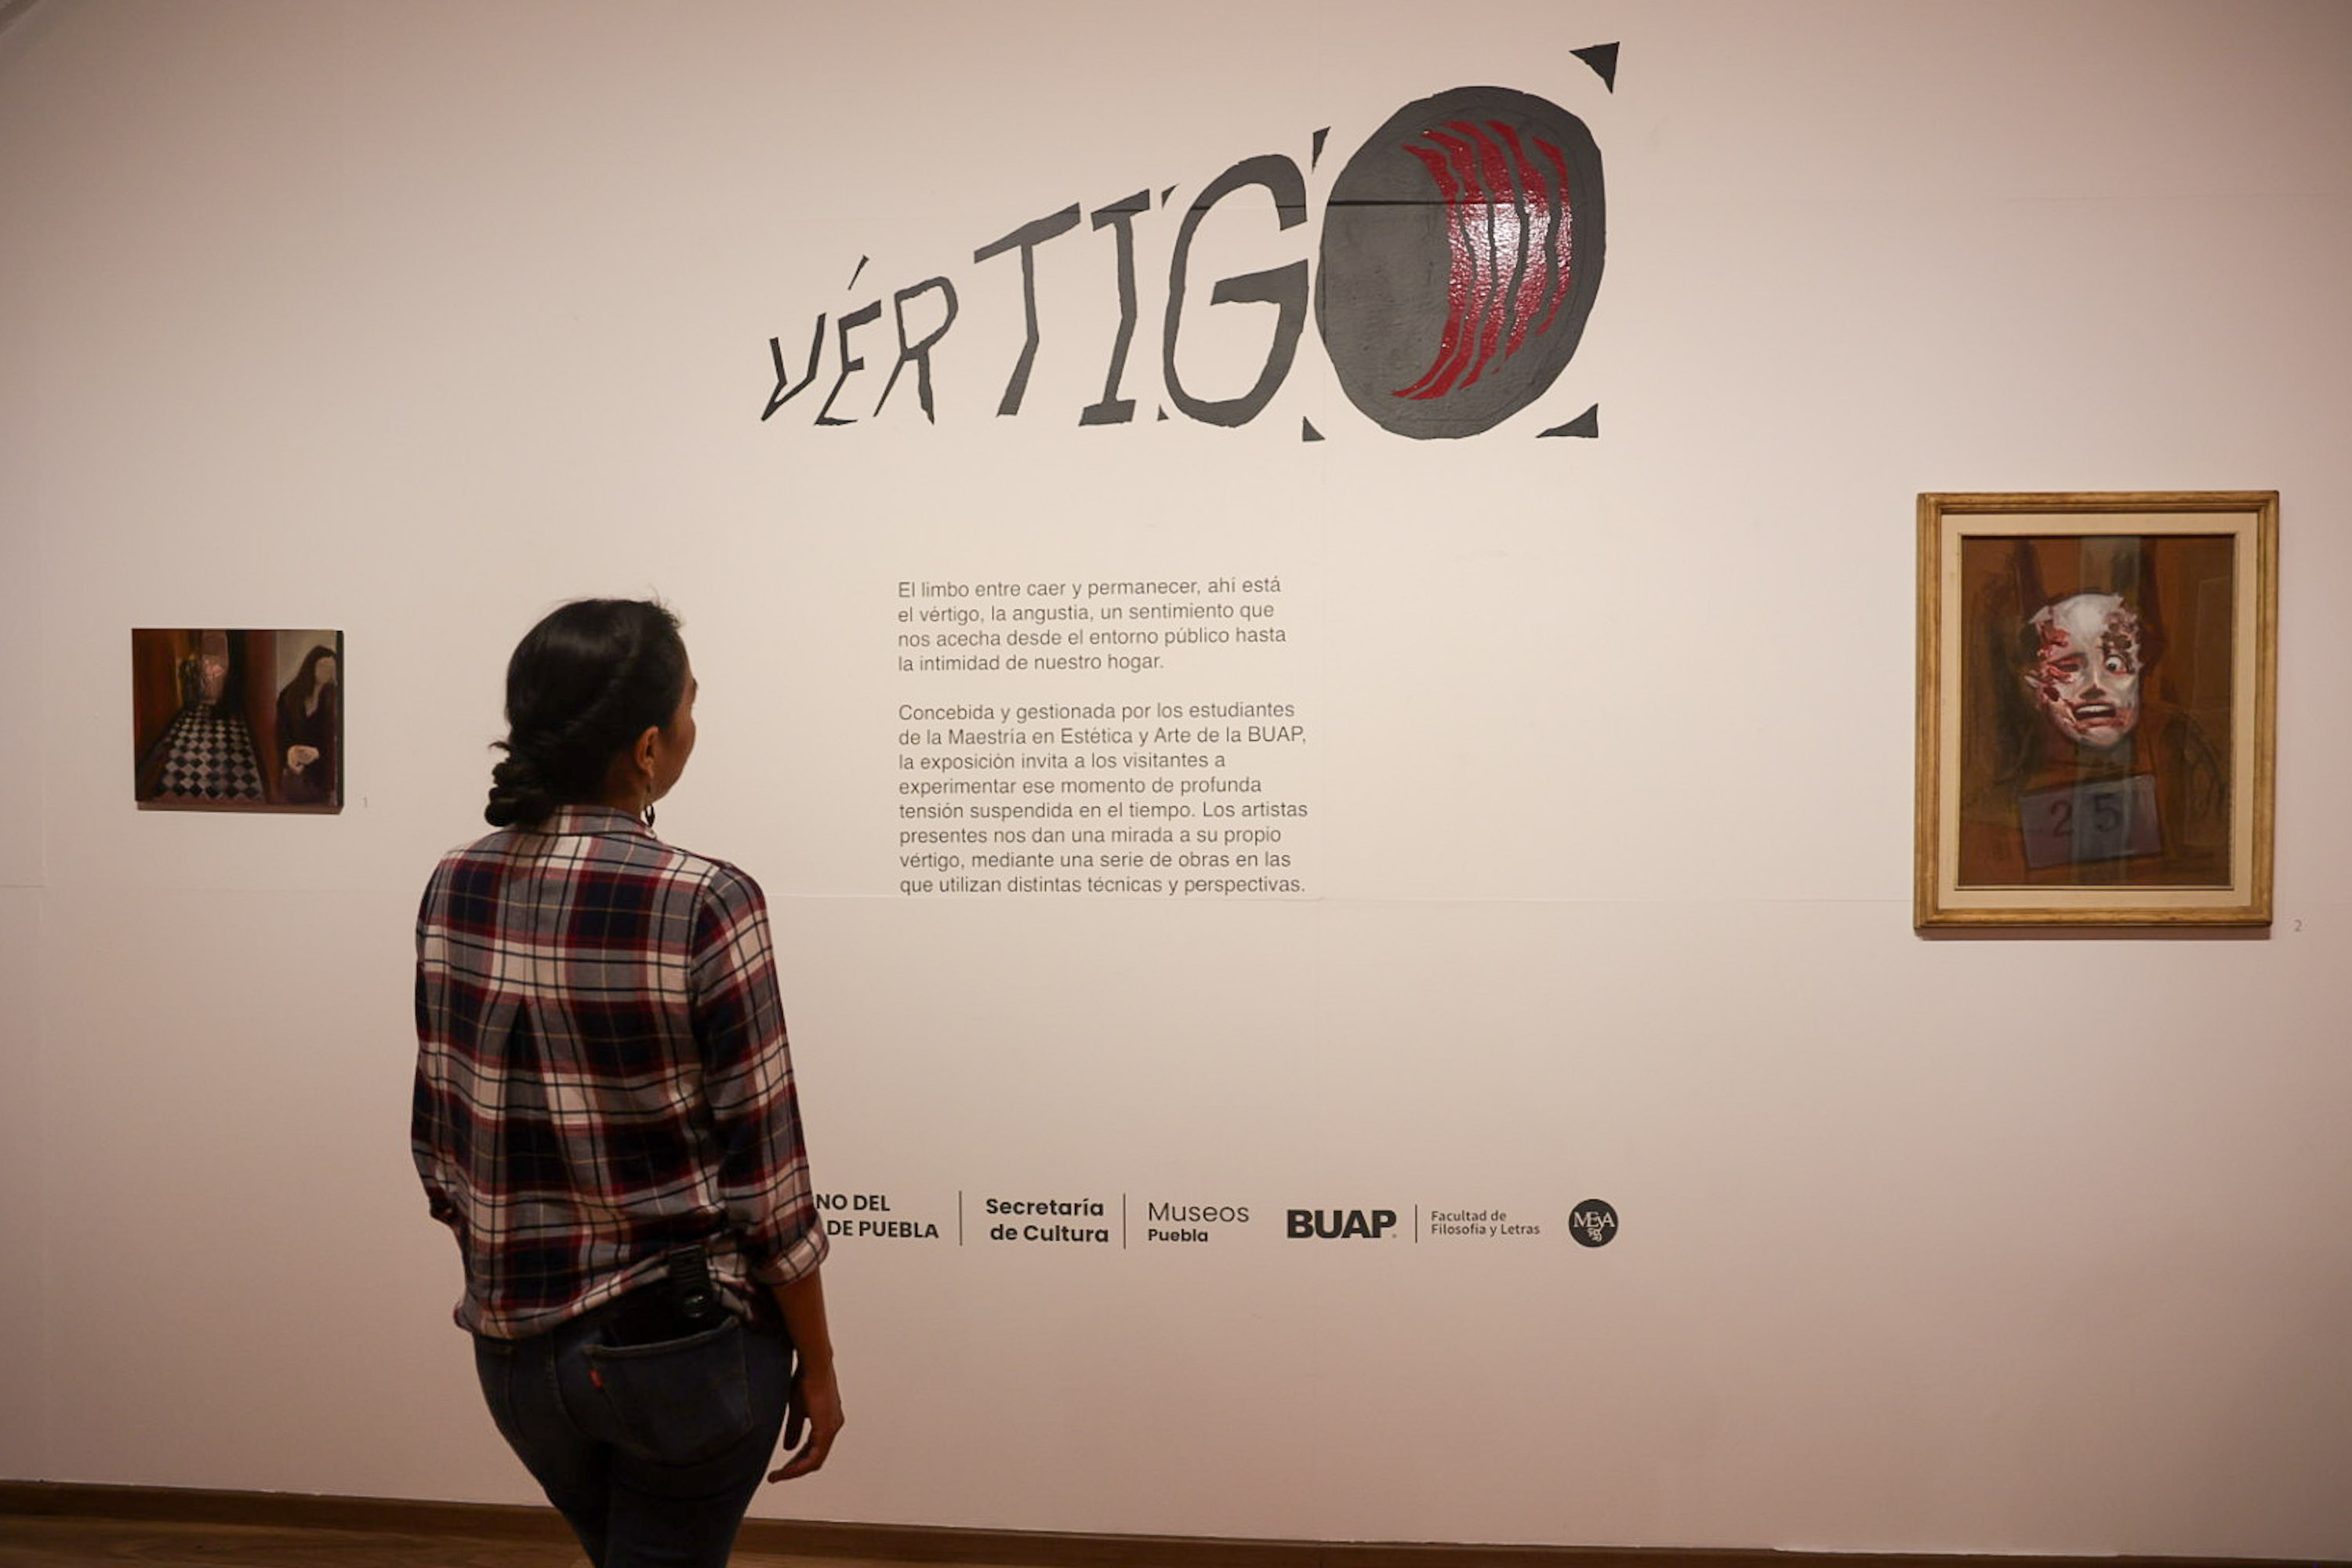 VIDEO Inauguran exposición Vértigo en San Pedro Museo de Arte